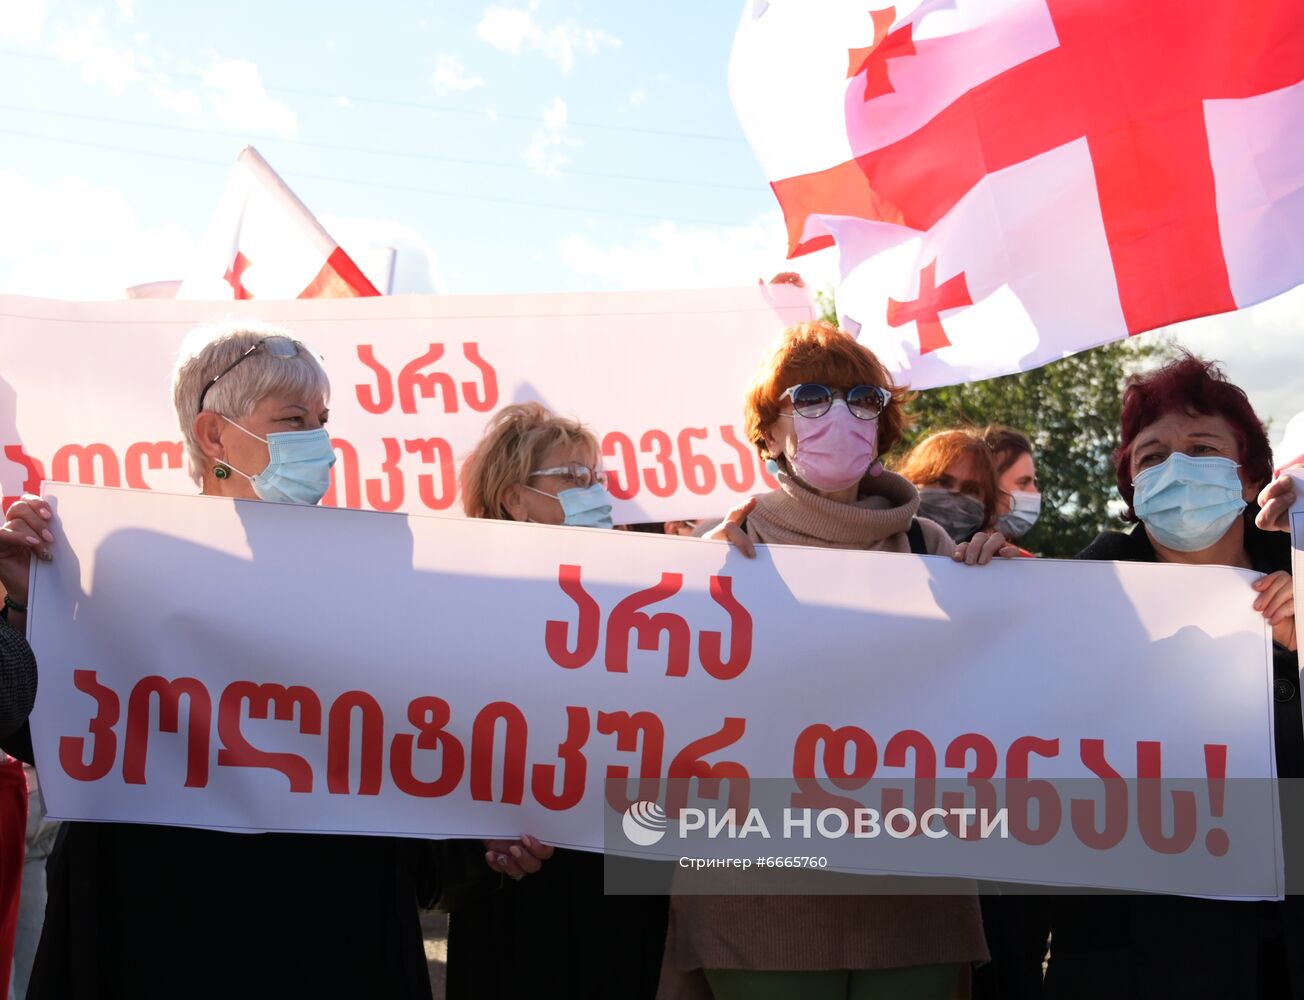 Акция сторонников М. Саакашвили в Грузии